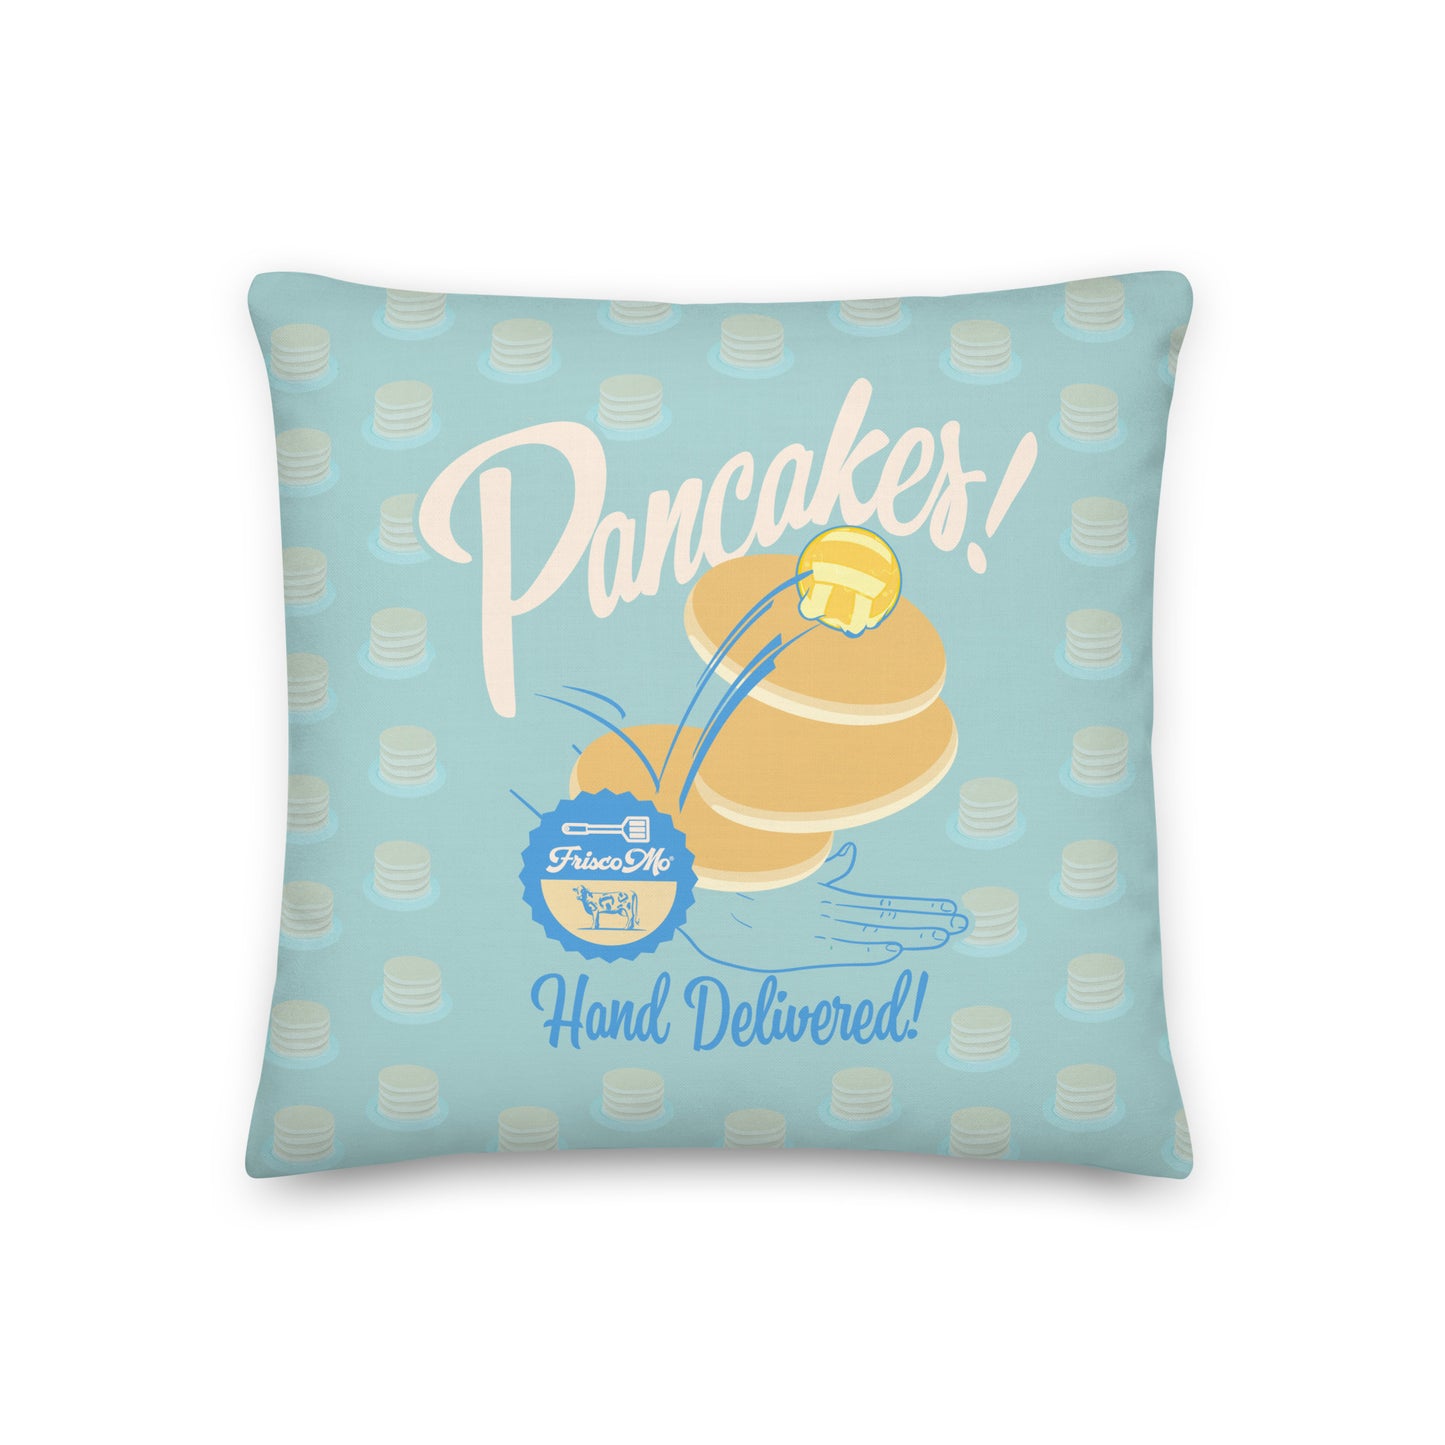 Pancakes Pillow